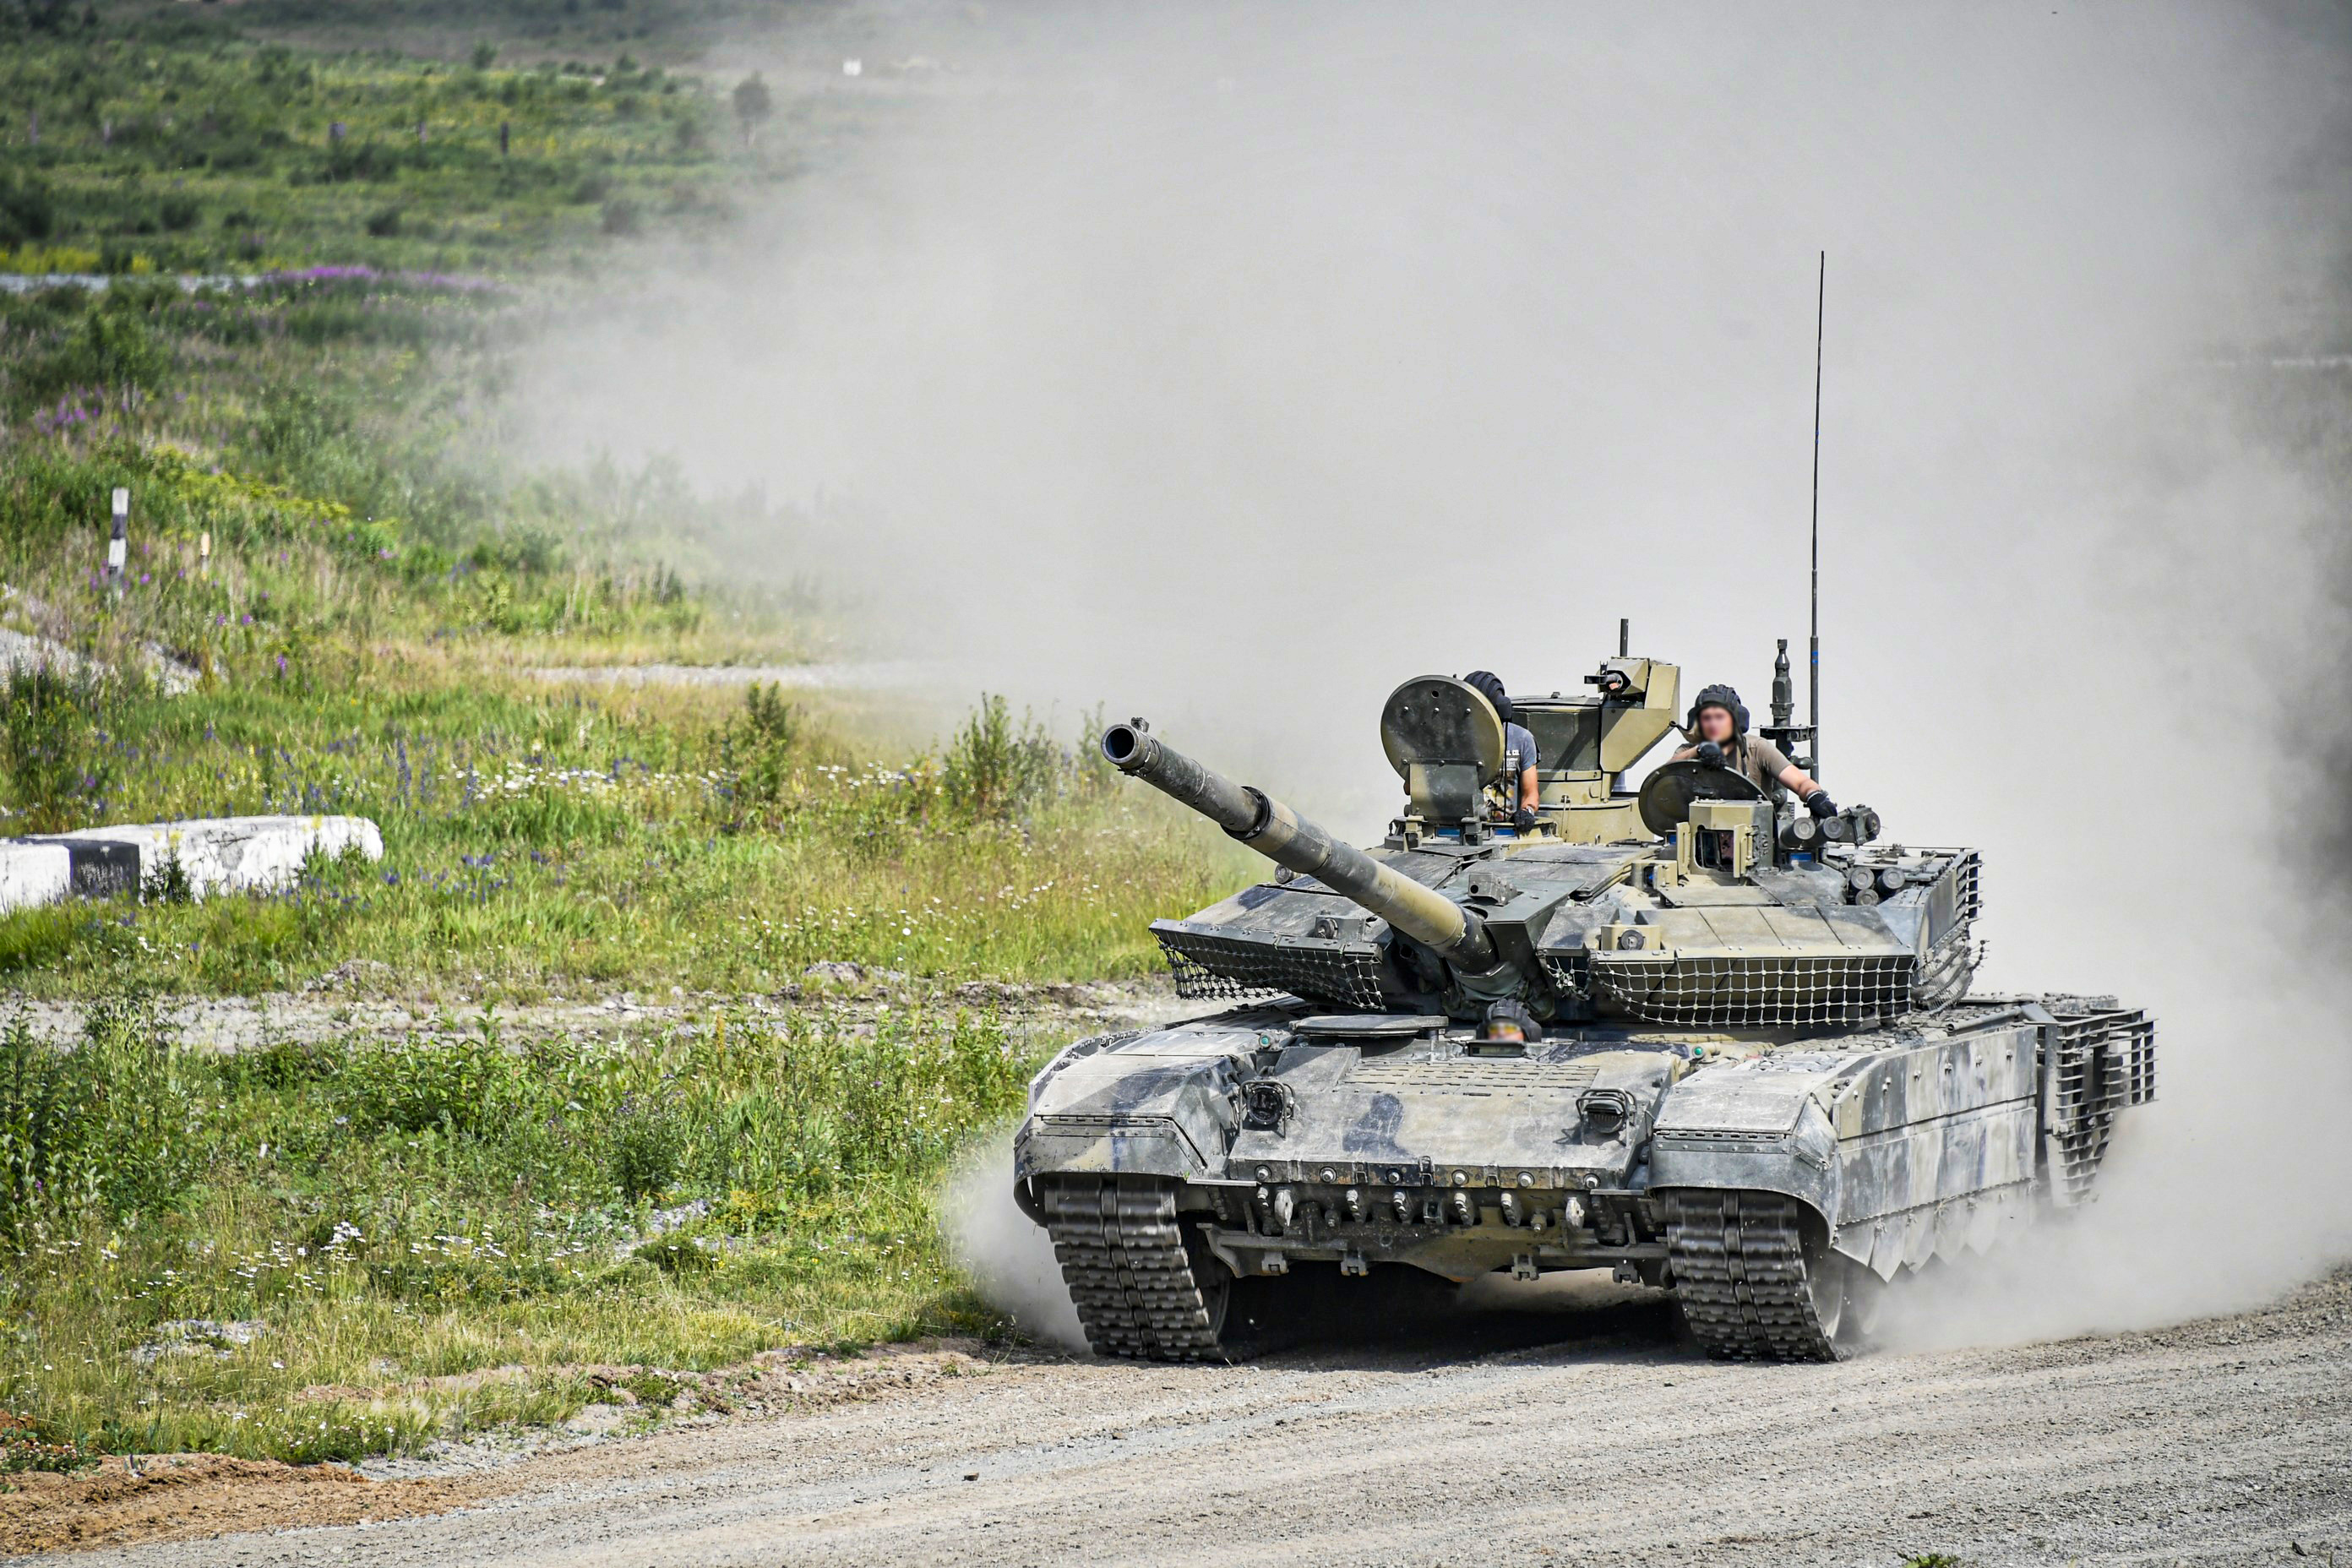 T72B3 auf Steroiden - ukrainischer Panzerspezialist berichtet über die Eigenschaften des seltenen russischen T-90M "Proryv" Panzers